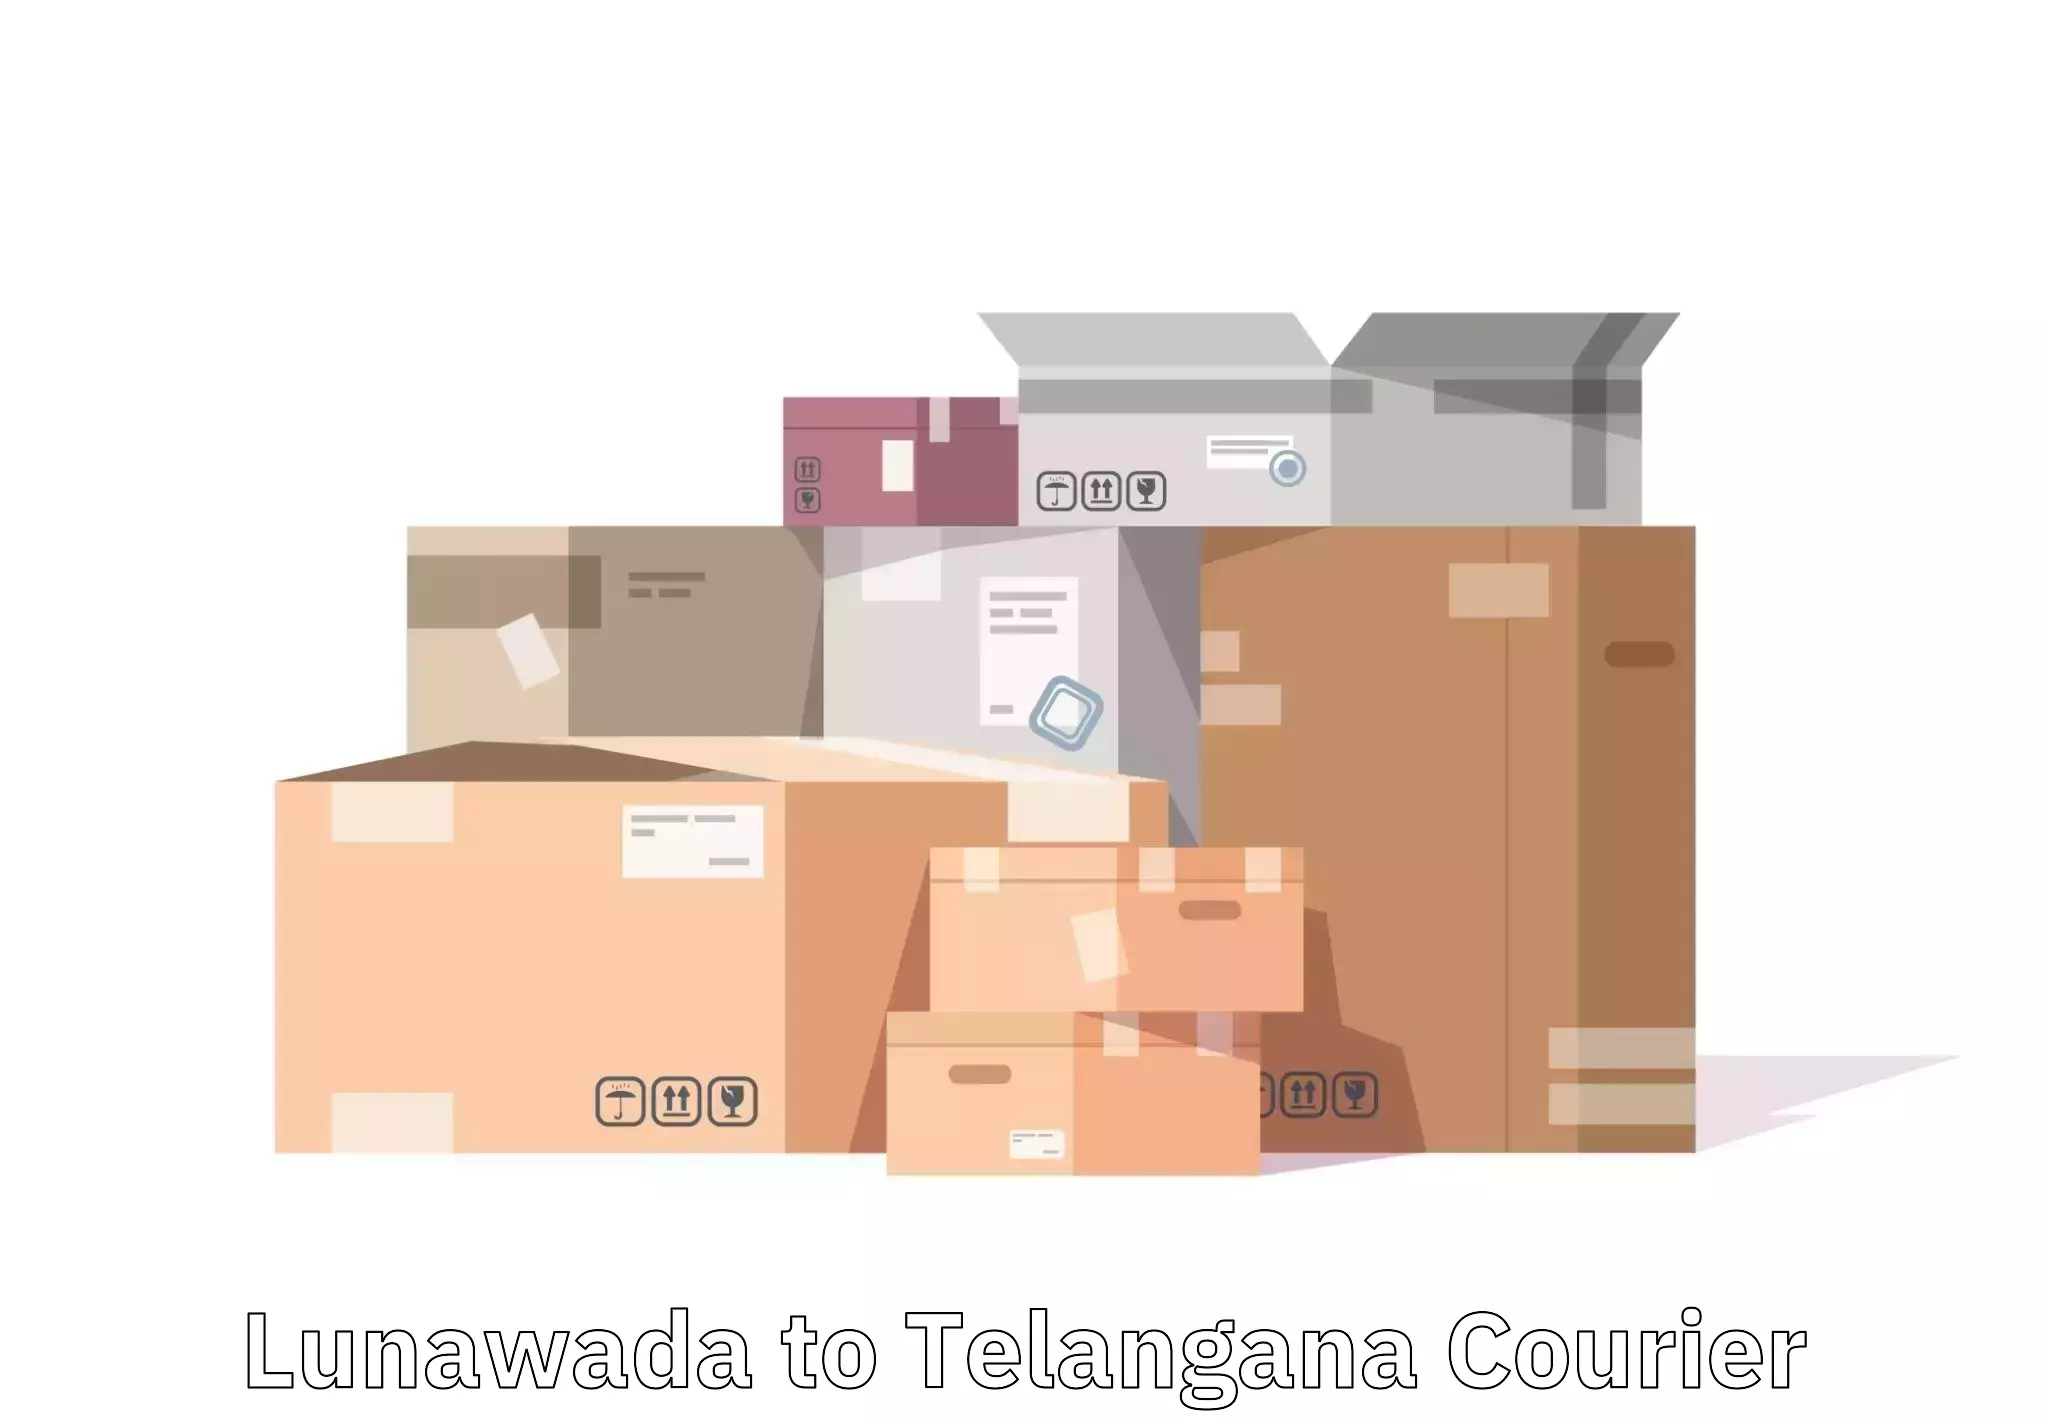 Luggage forwarding service in Lunawada to Balanagar